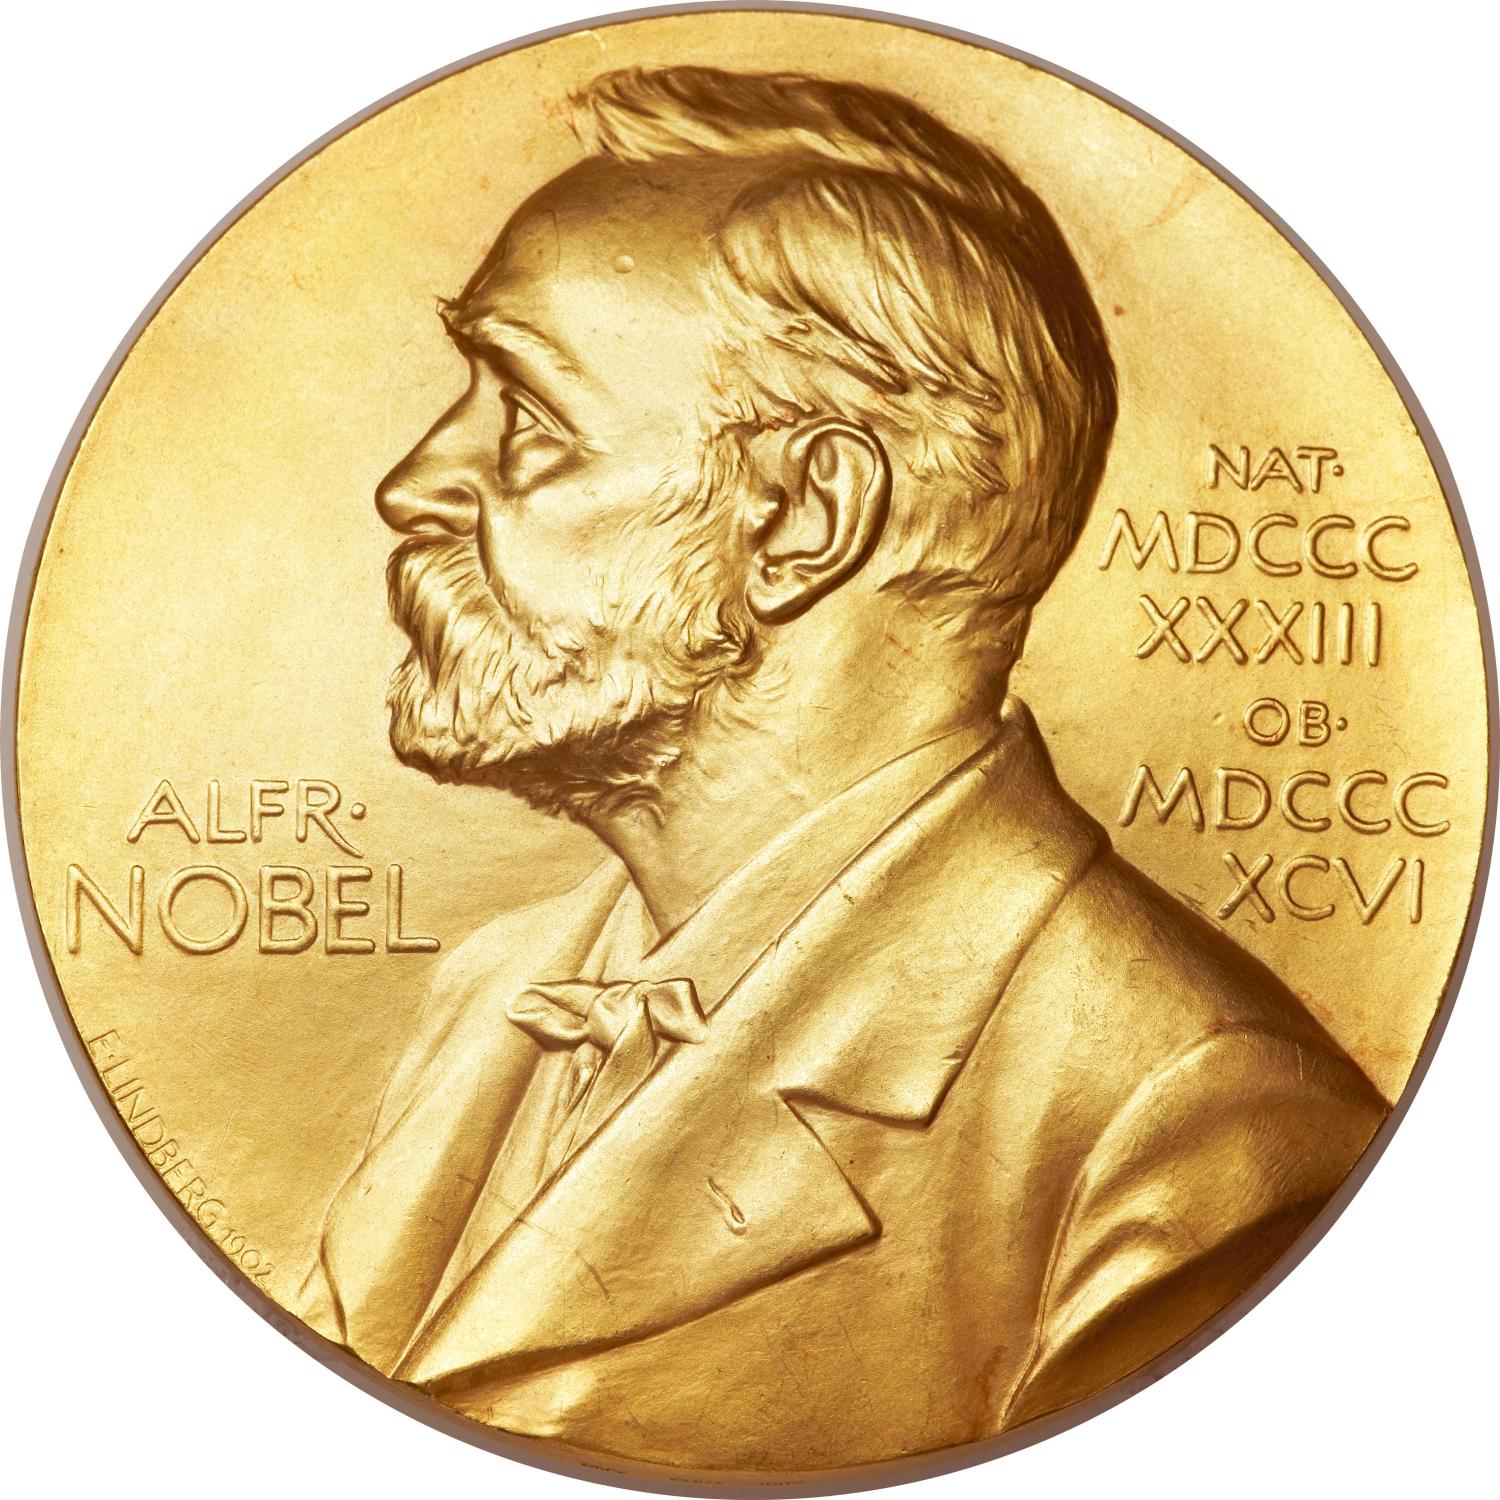 A Nobel Bet